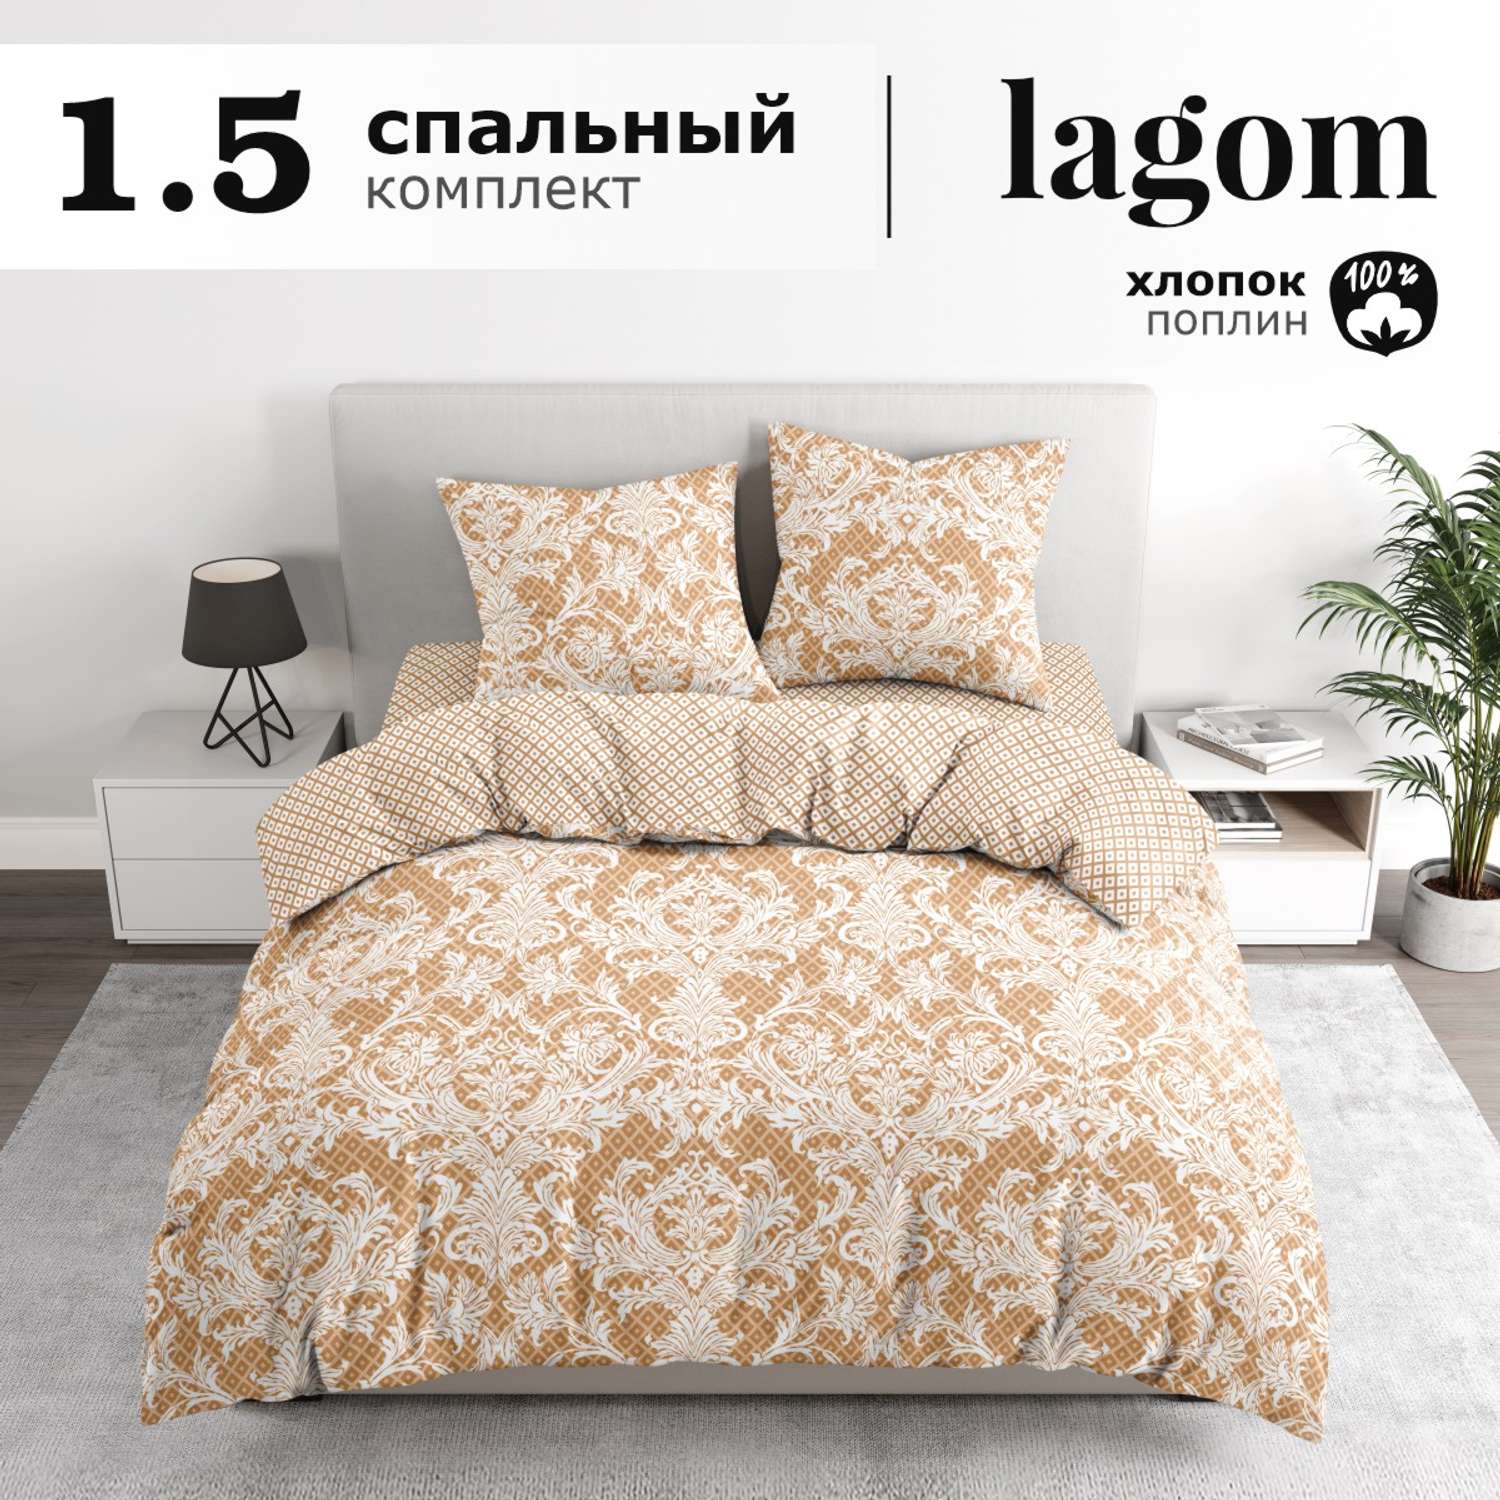 Комплект постельного белья lagom Бруа 1.5-спальный наволочки 70х70 - фото 2